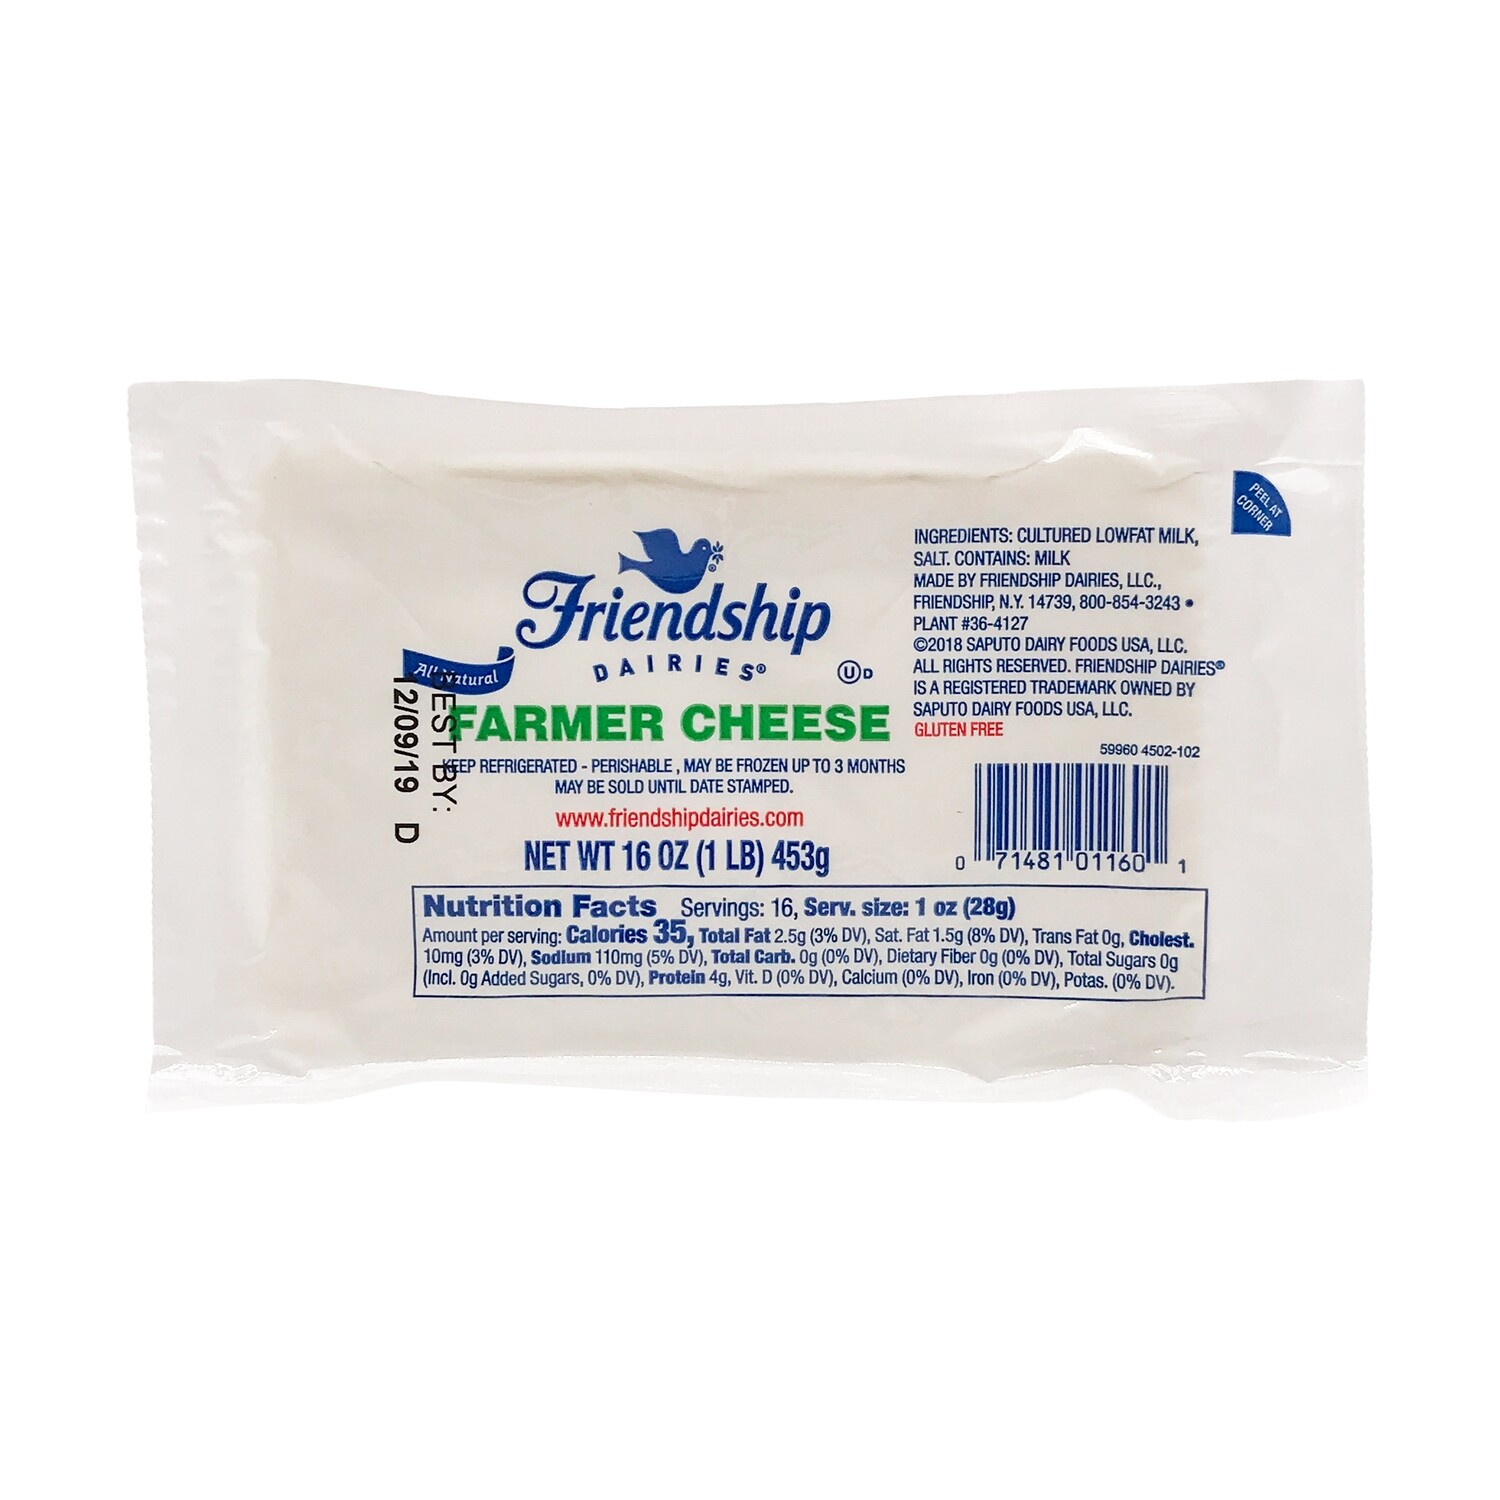 Friendship Dairies Farmer Cheese 1 lb (453g) block